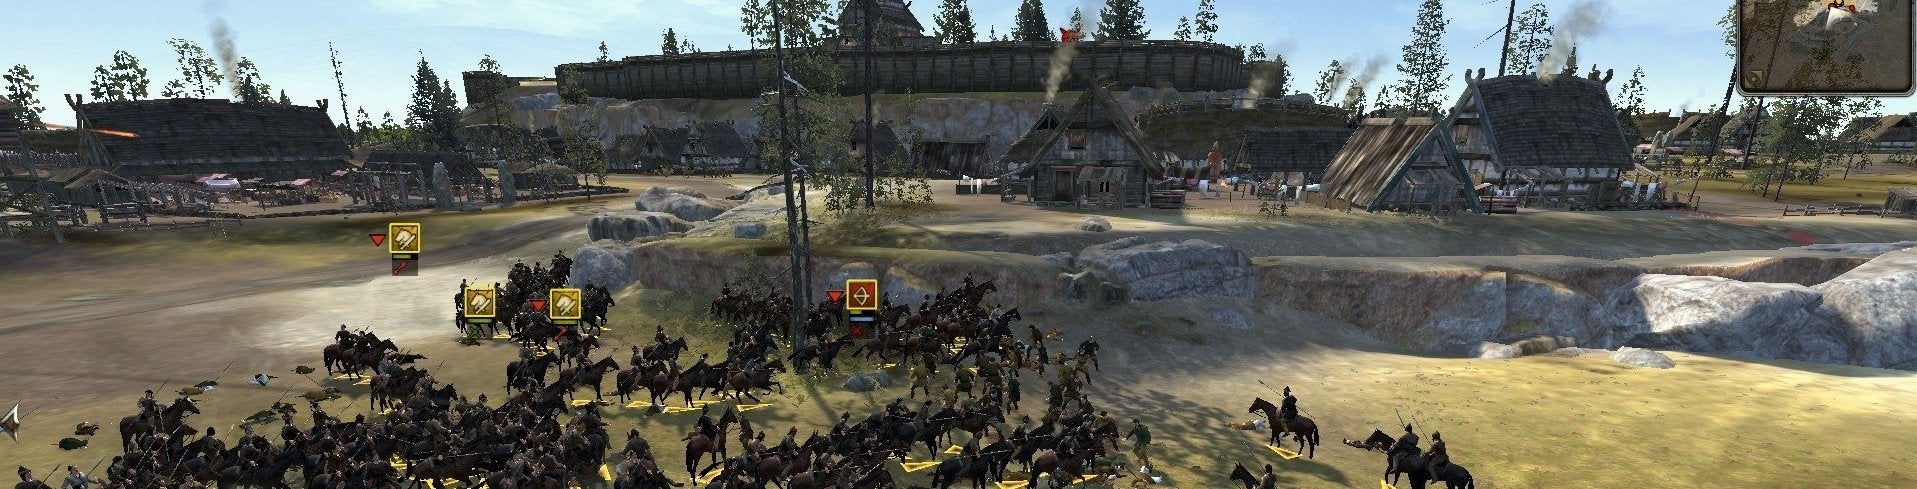 Image for Total War: Attila důkazem přechodu na digitálky?